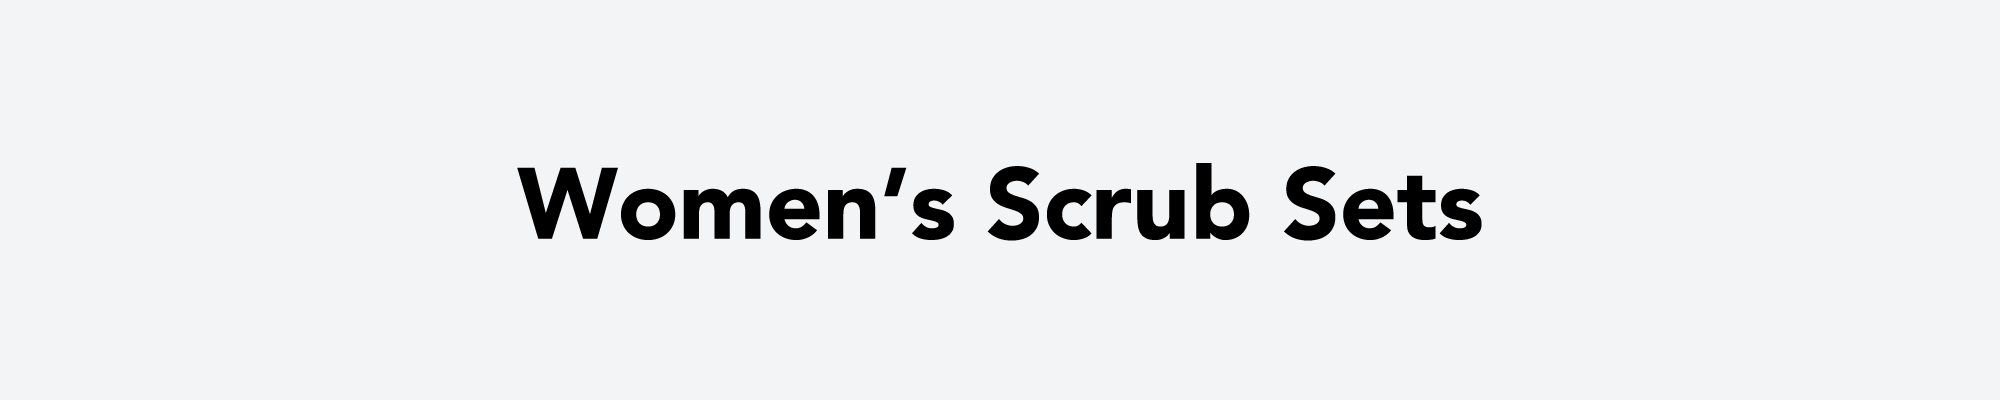 Women's Scrub Sets